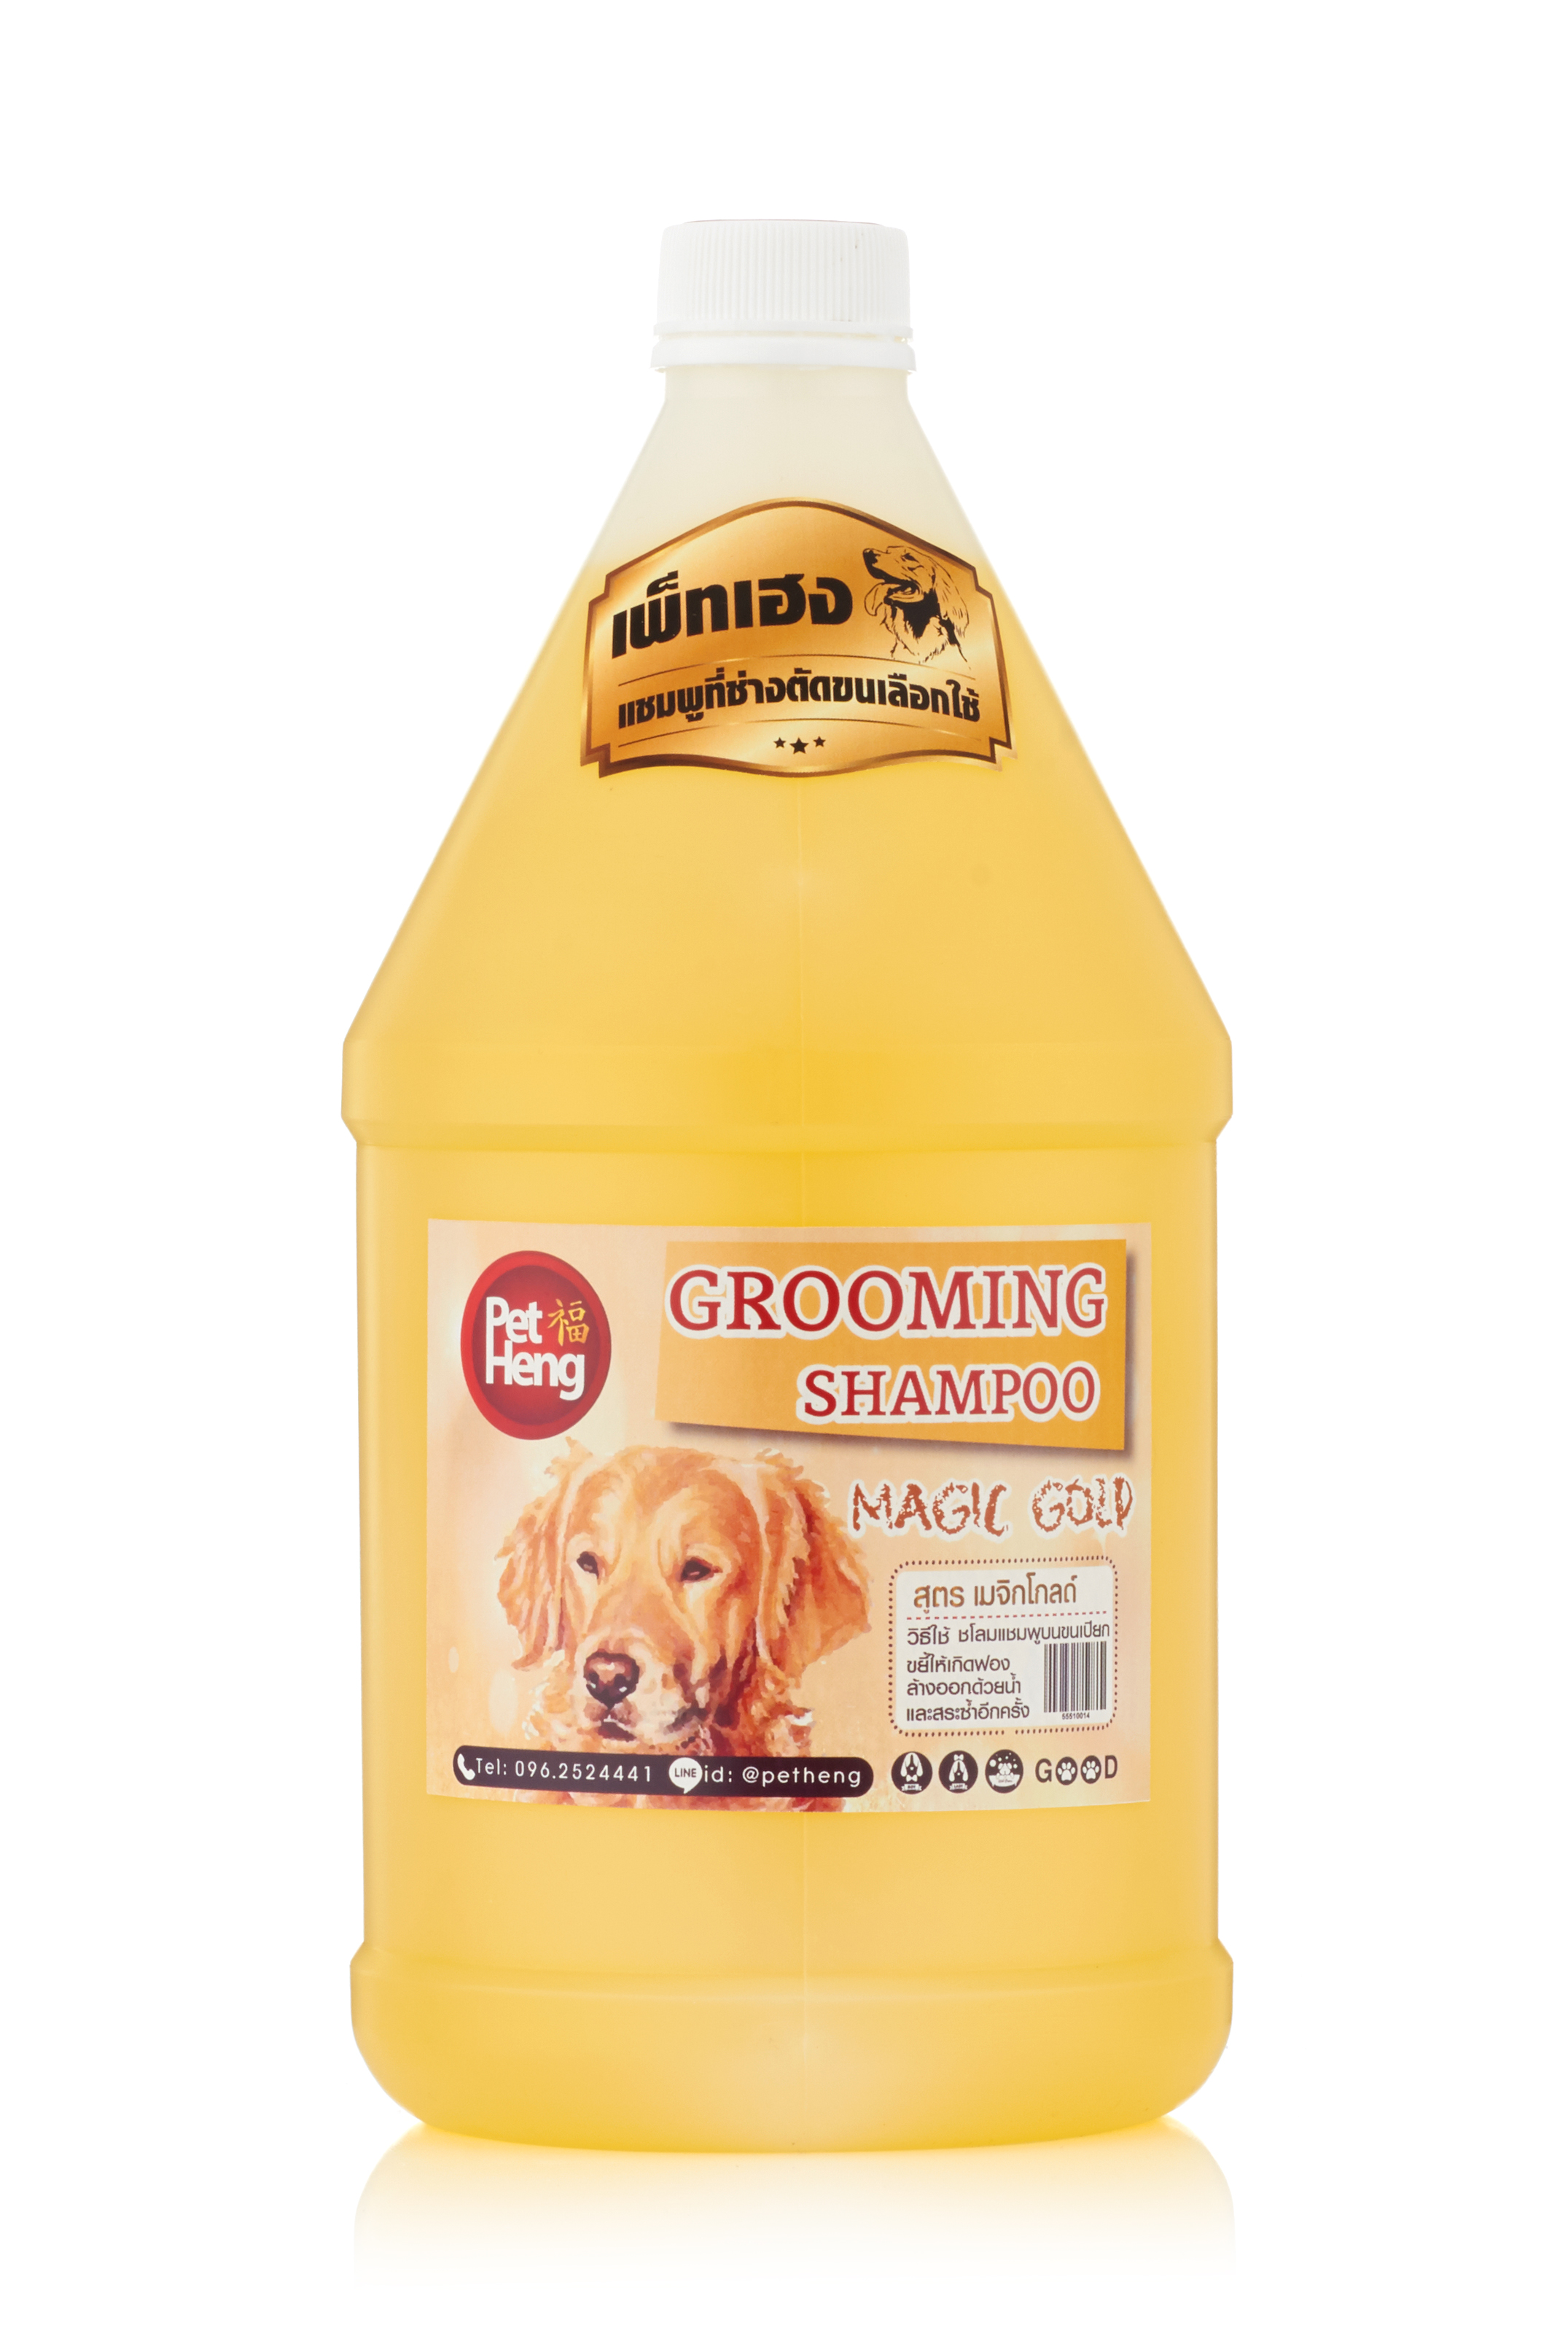 Petheng Dog Shampoo แชมพู สุนัขป้องกัน เห็บหมัด สำหรับสุนัข และอาบเเพะ แกะ ทุกสายพันธุ์ บำรุงขน แก้คัน สูตรเมจิกโกลด์ 1 ลิตร